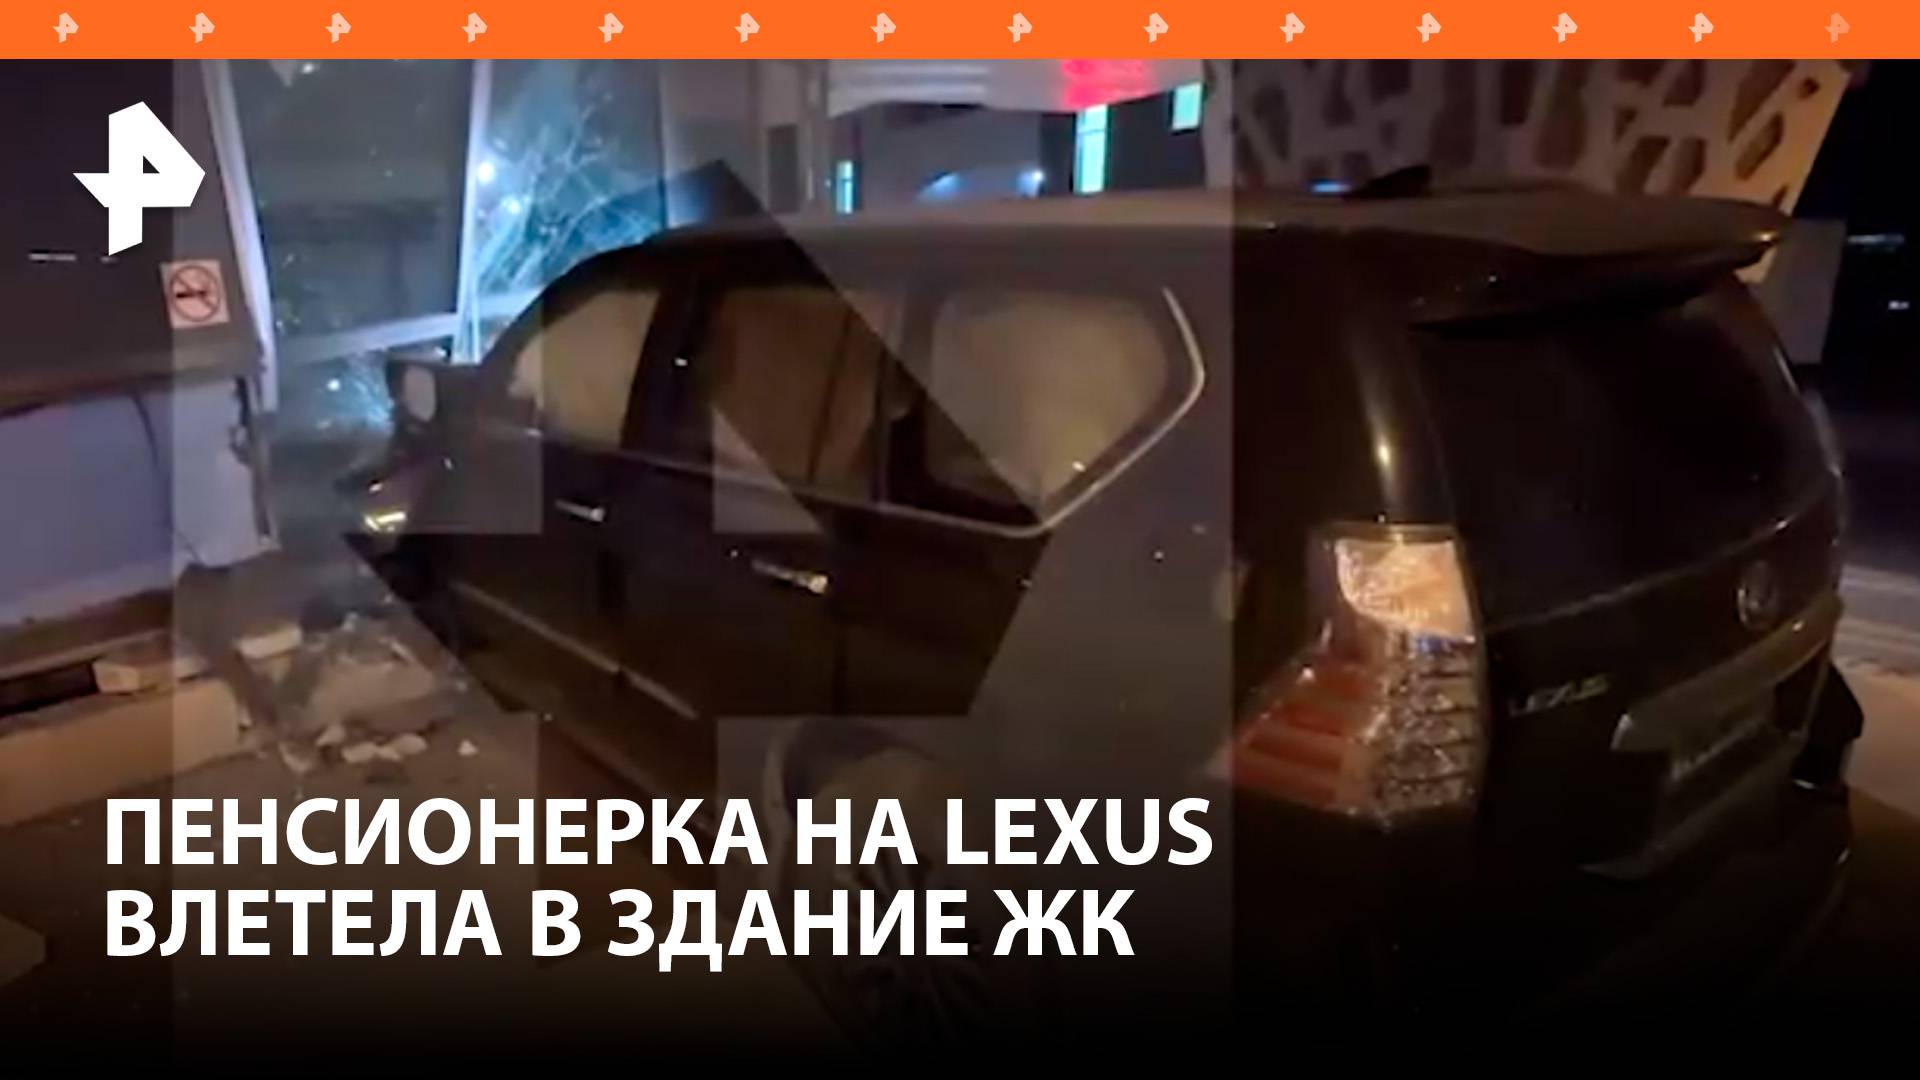 Пенсионерка на Lexus врезалась в здание ЖК "Спутник" в центре Москвы / РЕН Новости